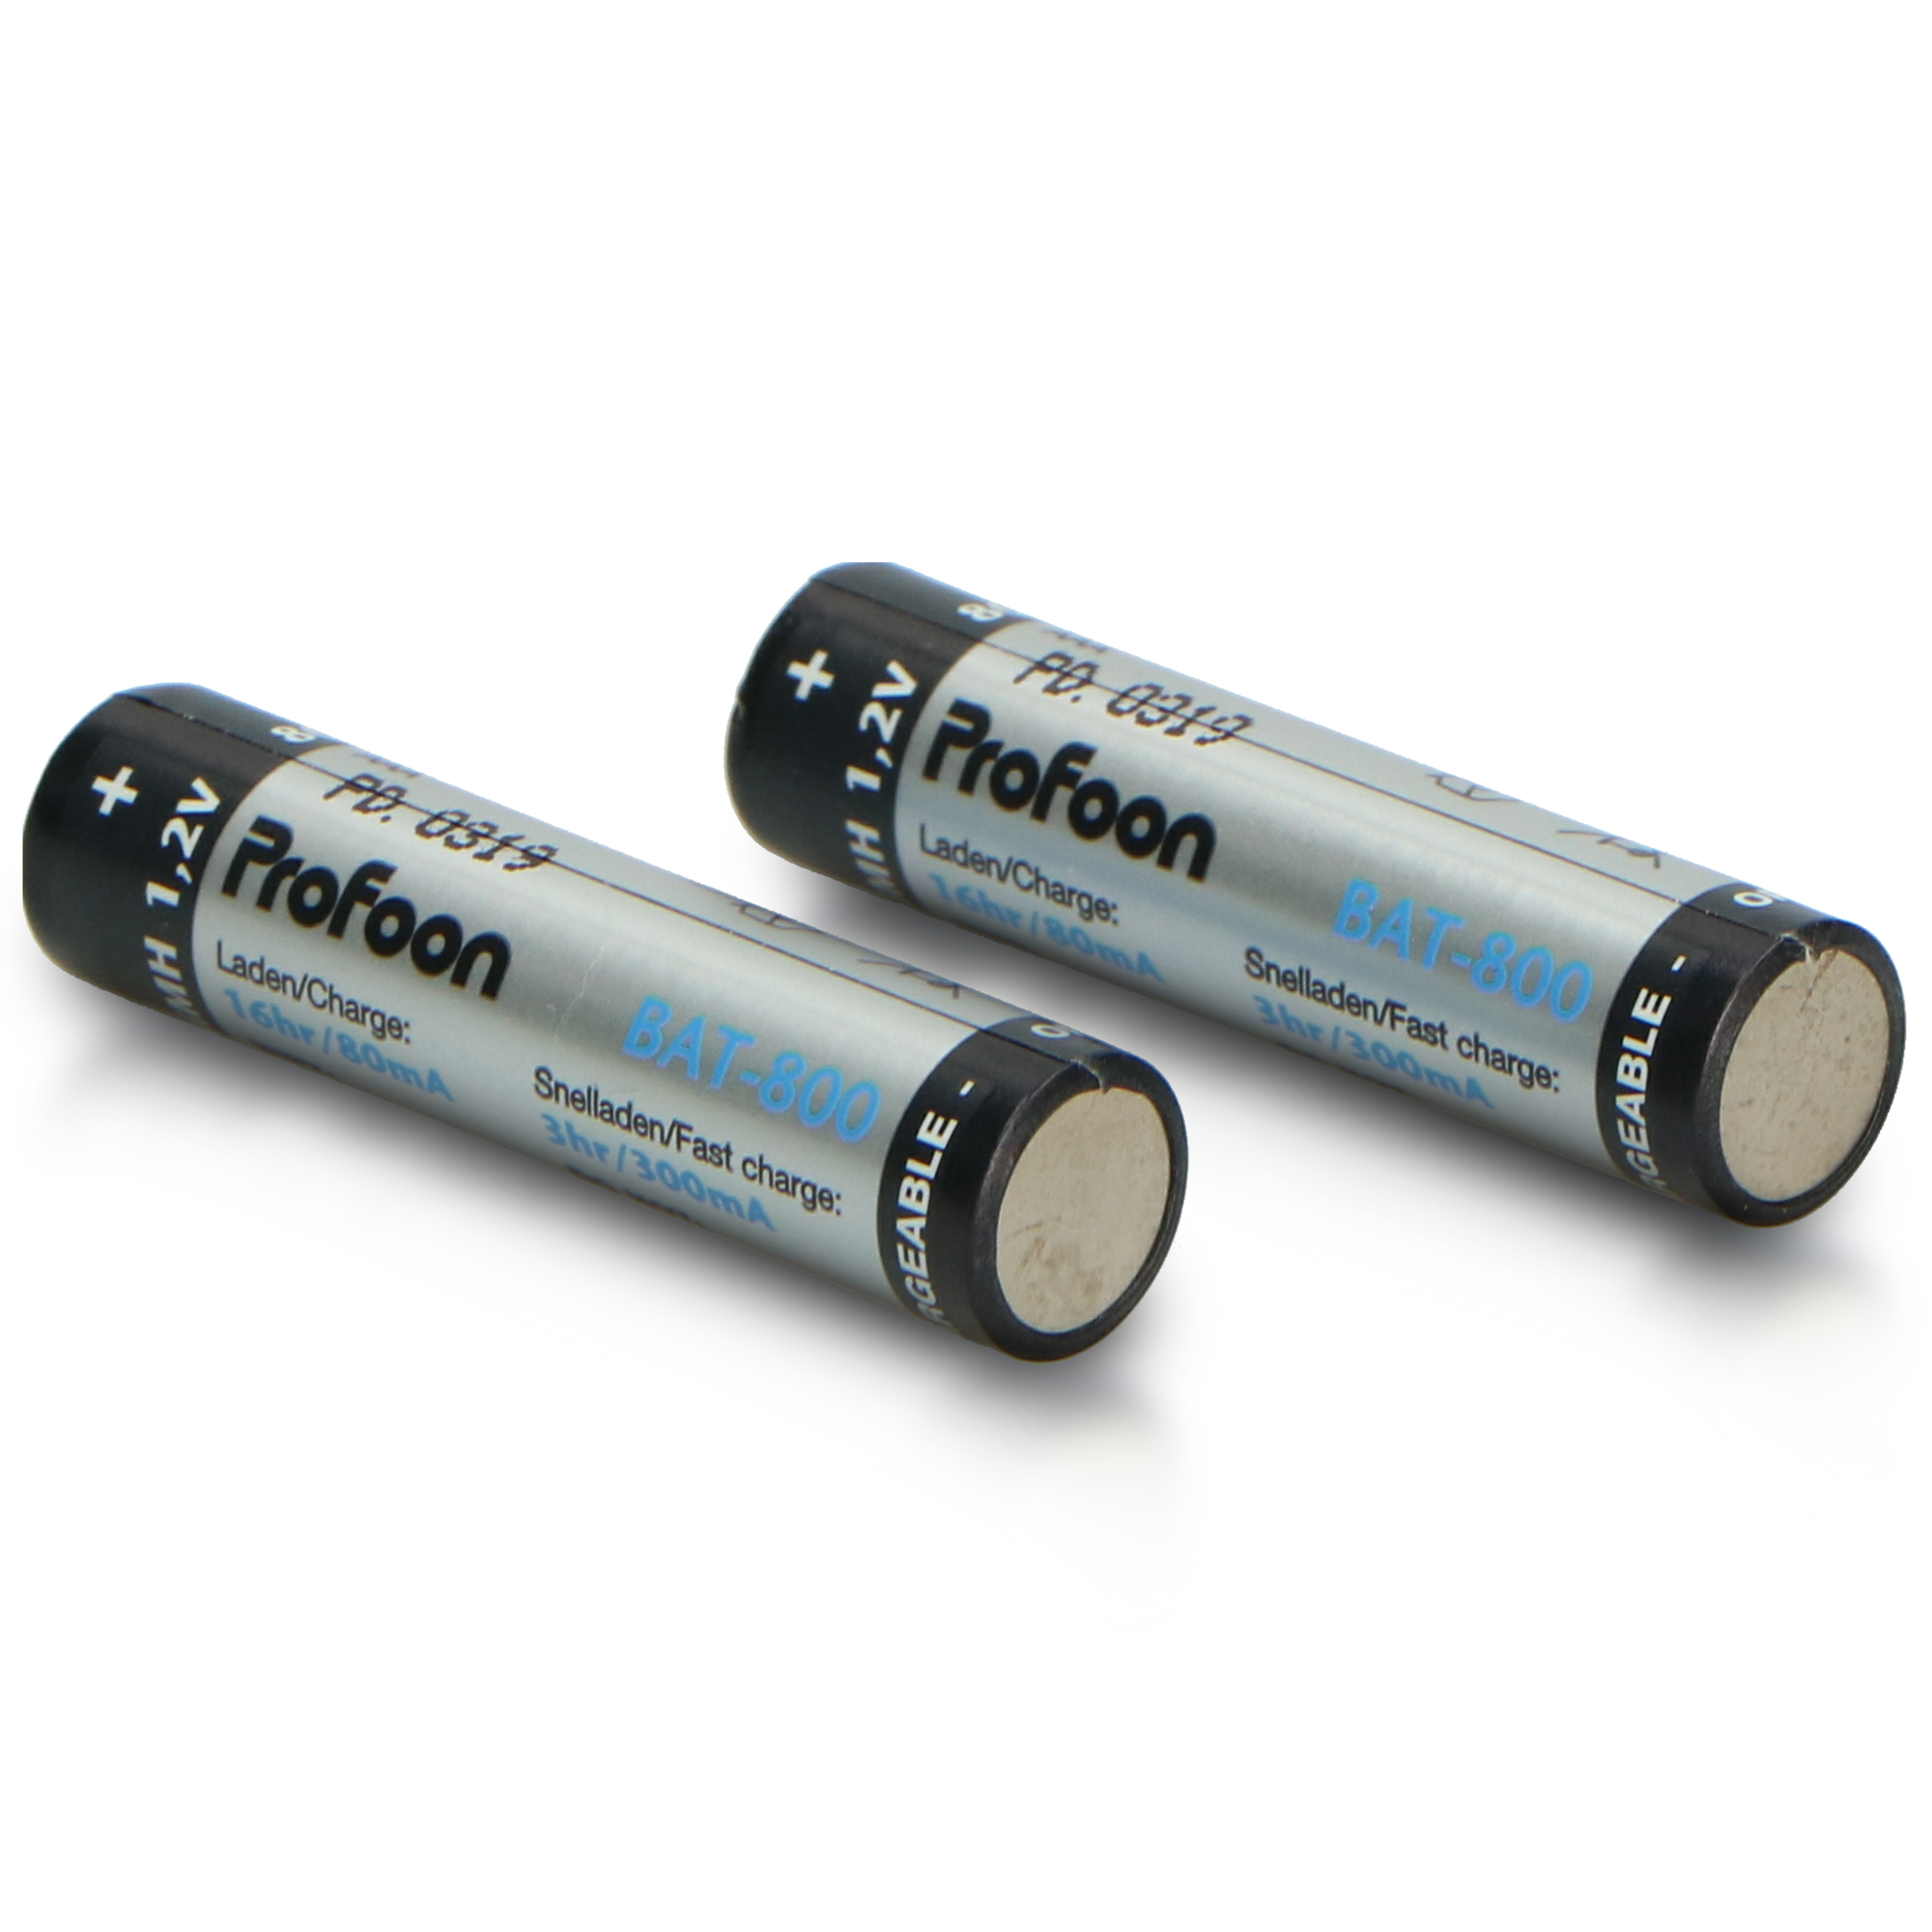 PROFOON BAT-800 AAA Wiederaufladbare AAA-Batterien, mAh 800 1.2 NiMH, Volt